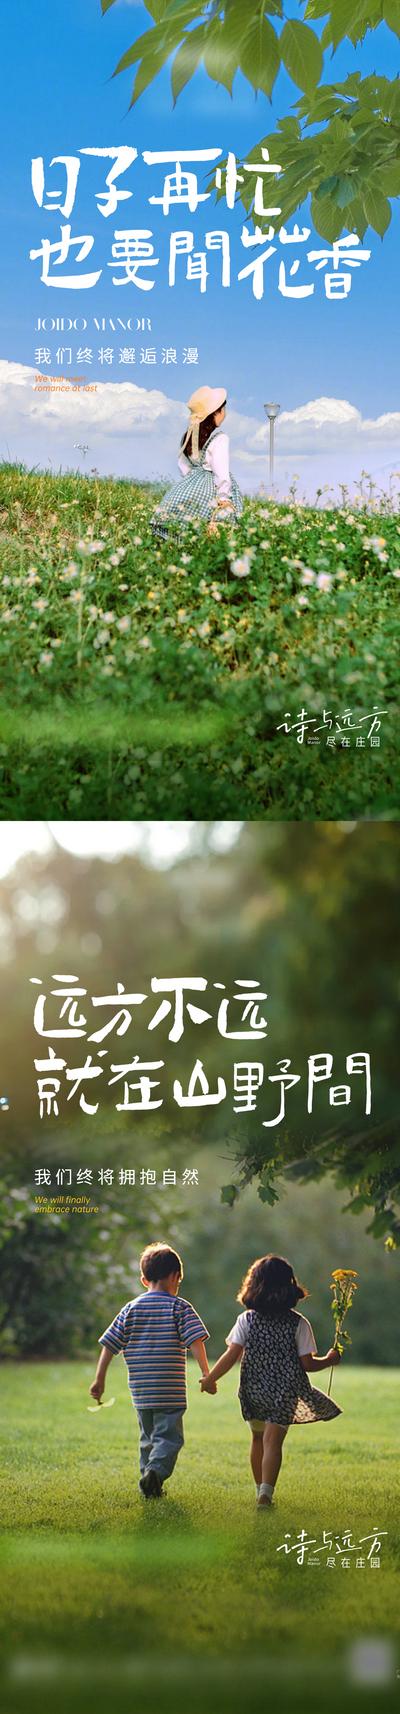 南门网 海报 房地产 文旅 实景 公园 园林 田野 自然 风景 系列